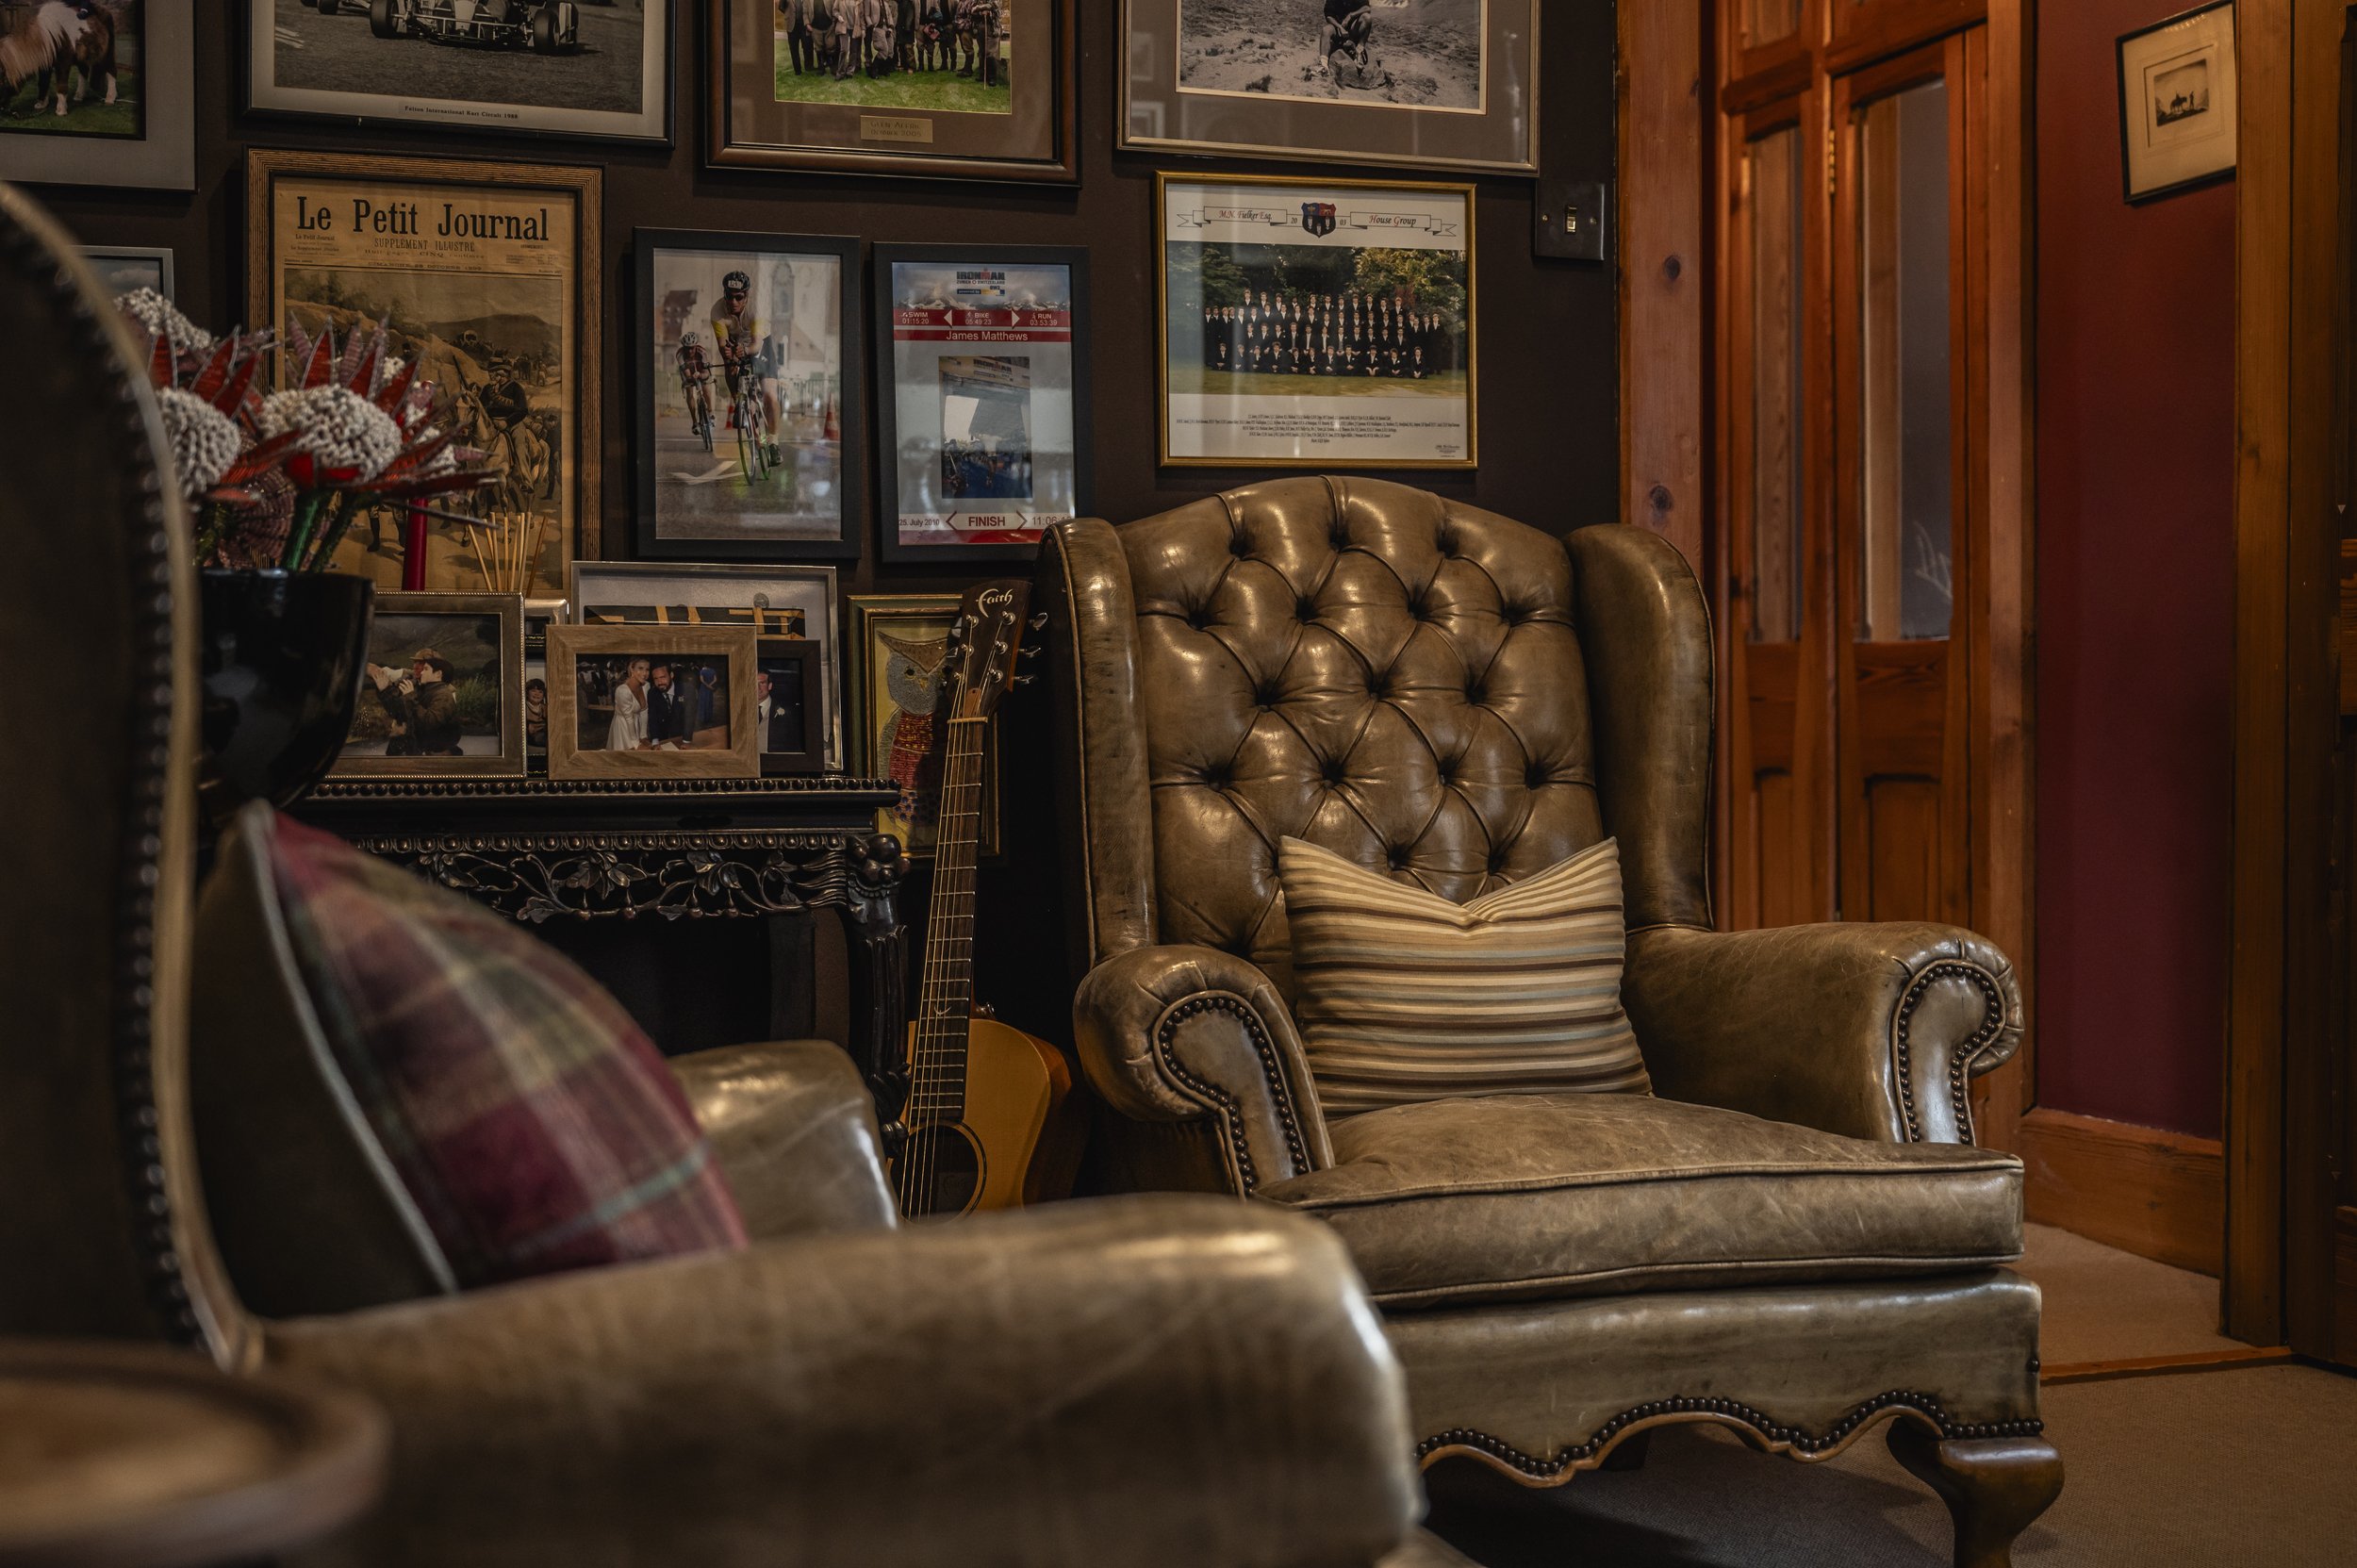 Glen-Affric-Scotland-Highlands-luxury-Bar-Chairs.jpg